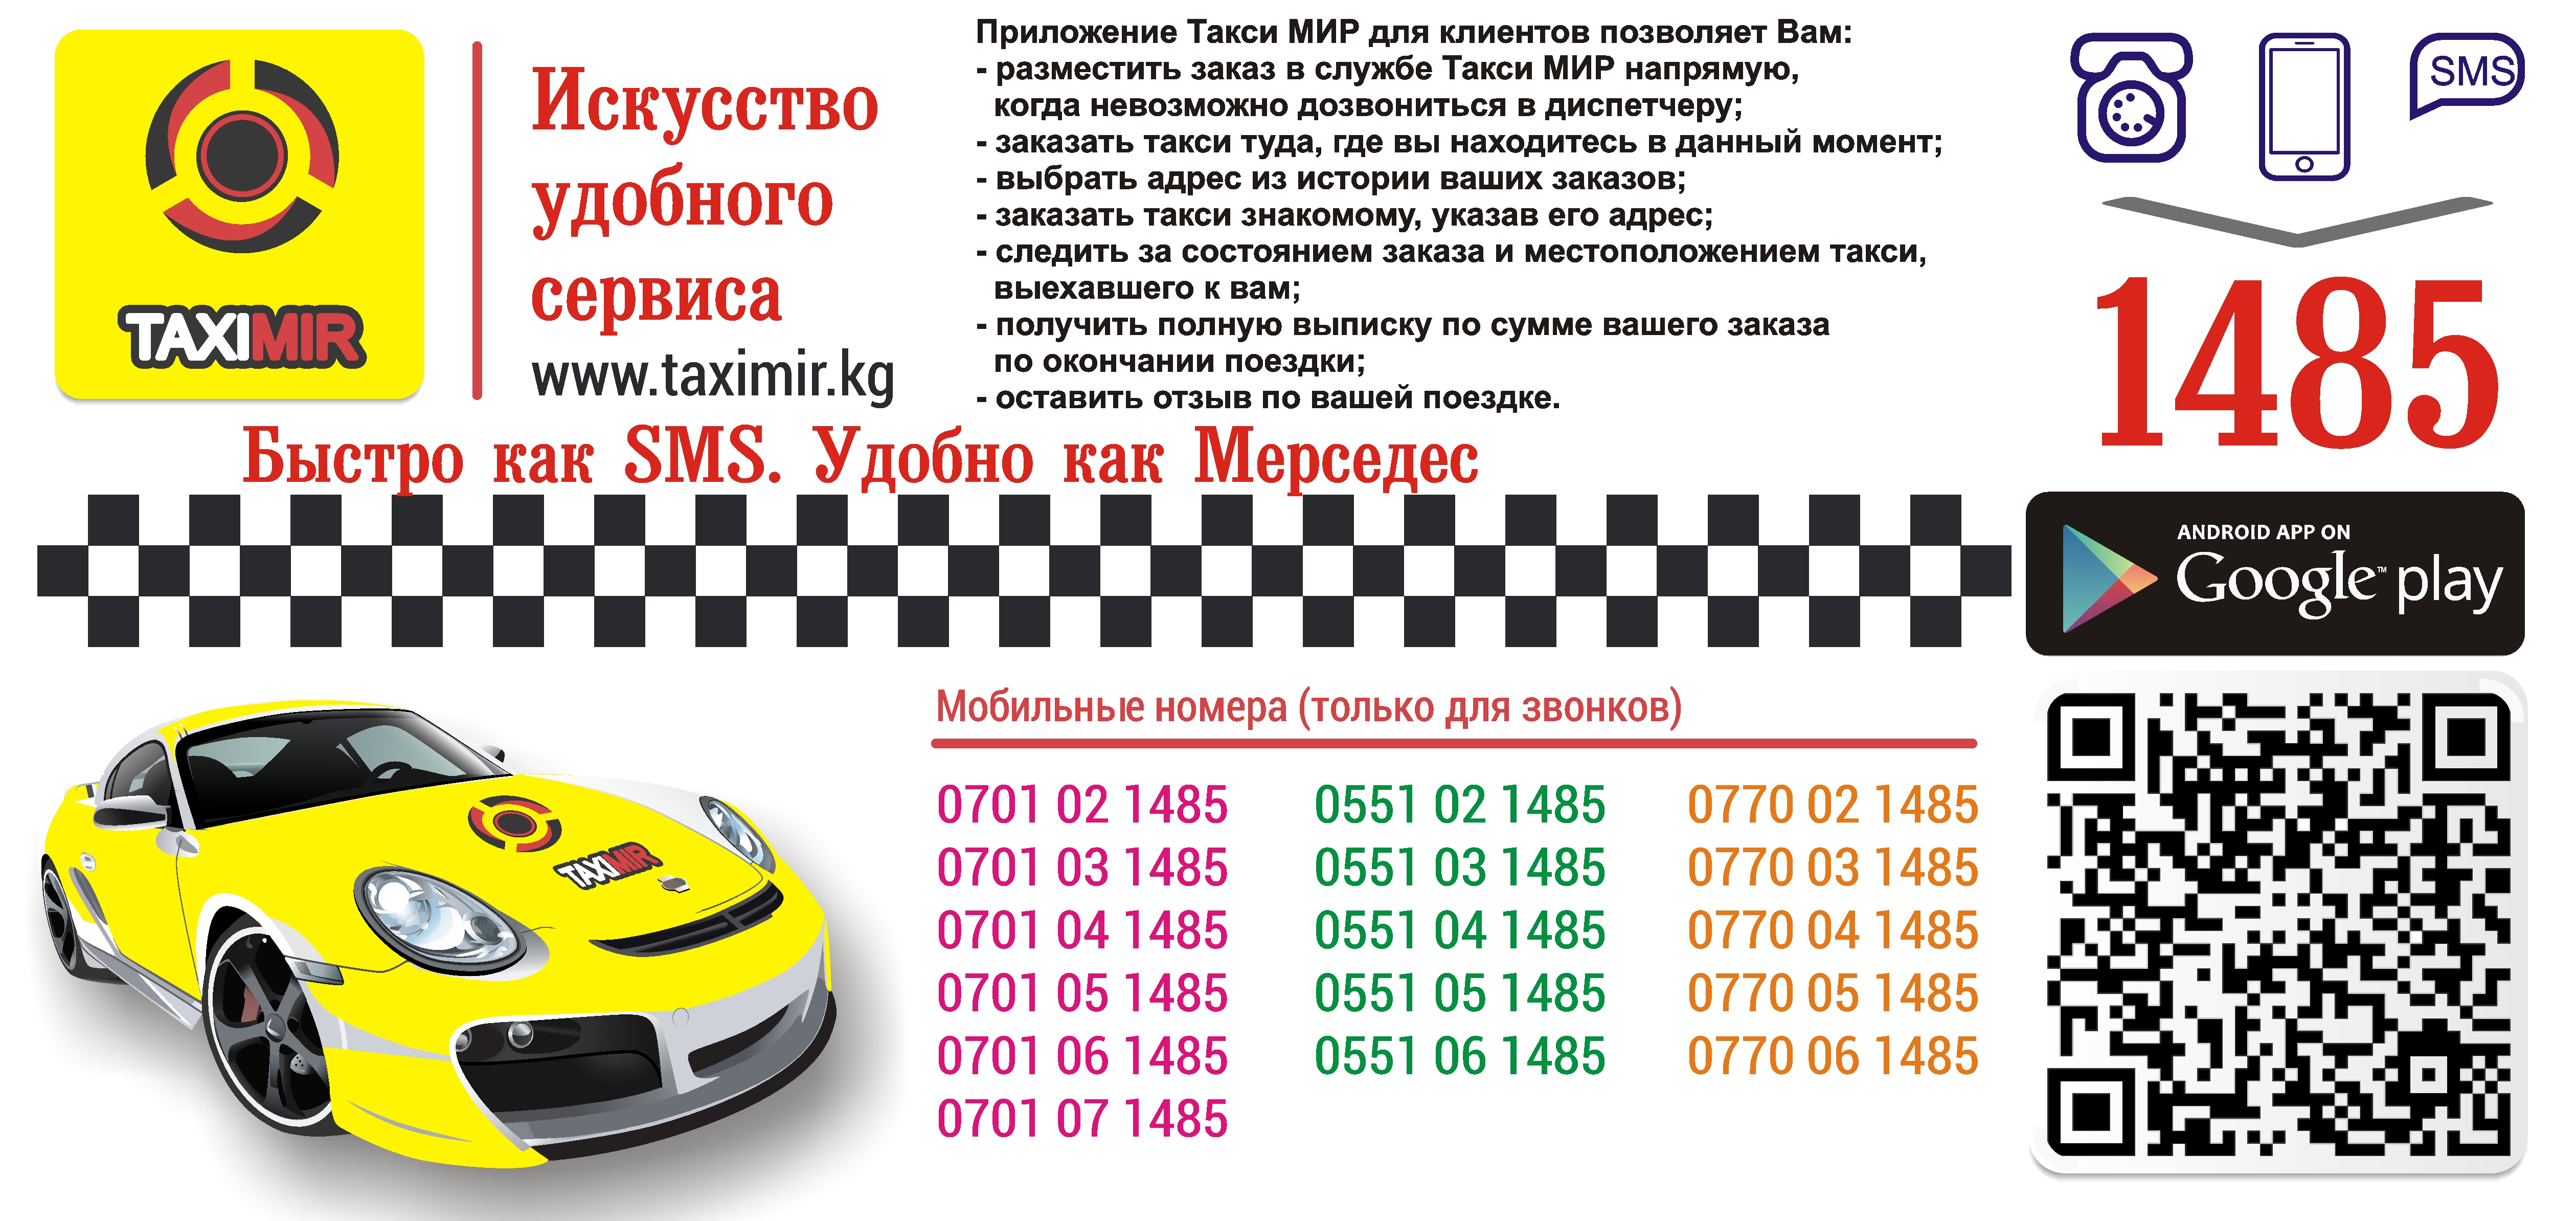 Пензенское такси номера телефонов. Такси мир. Смс такси. Такси Бишкек номер.